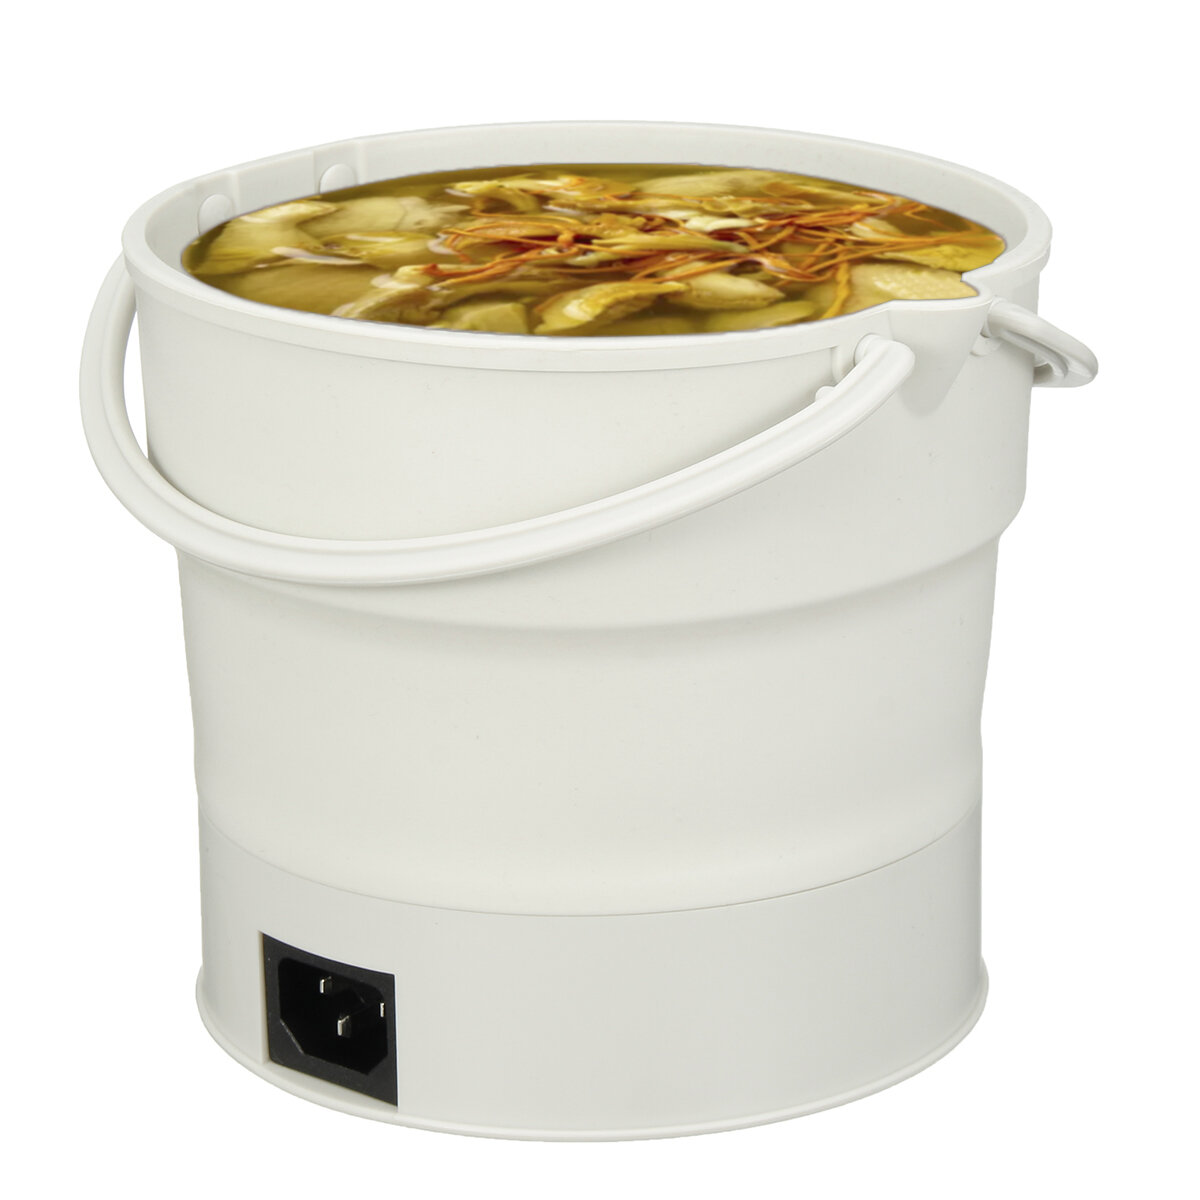 220V 0,6L tragbare zusammenklappbare Hot Pot Elektroherd Bratpfanne Wasserkocher beheizter Lebensmittelbehälter für Camping Wandern Reisen